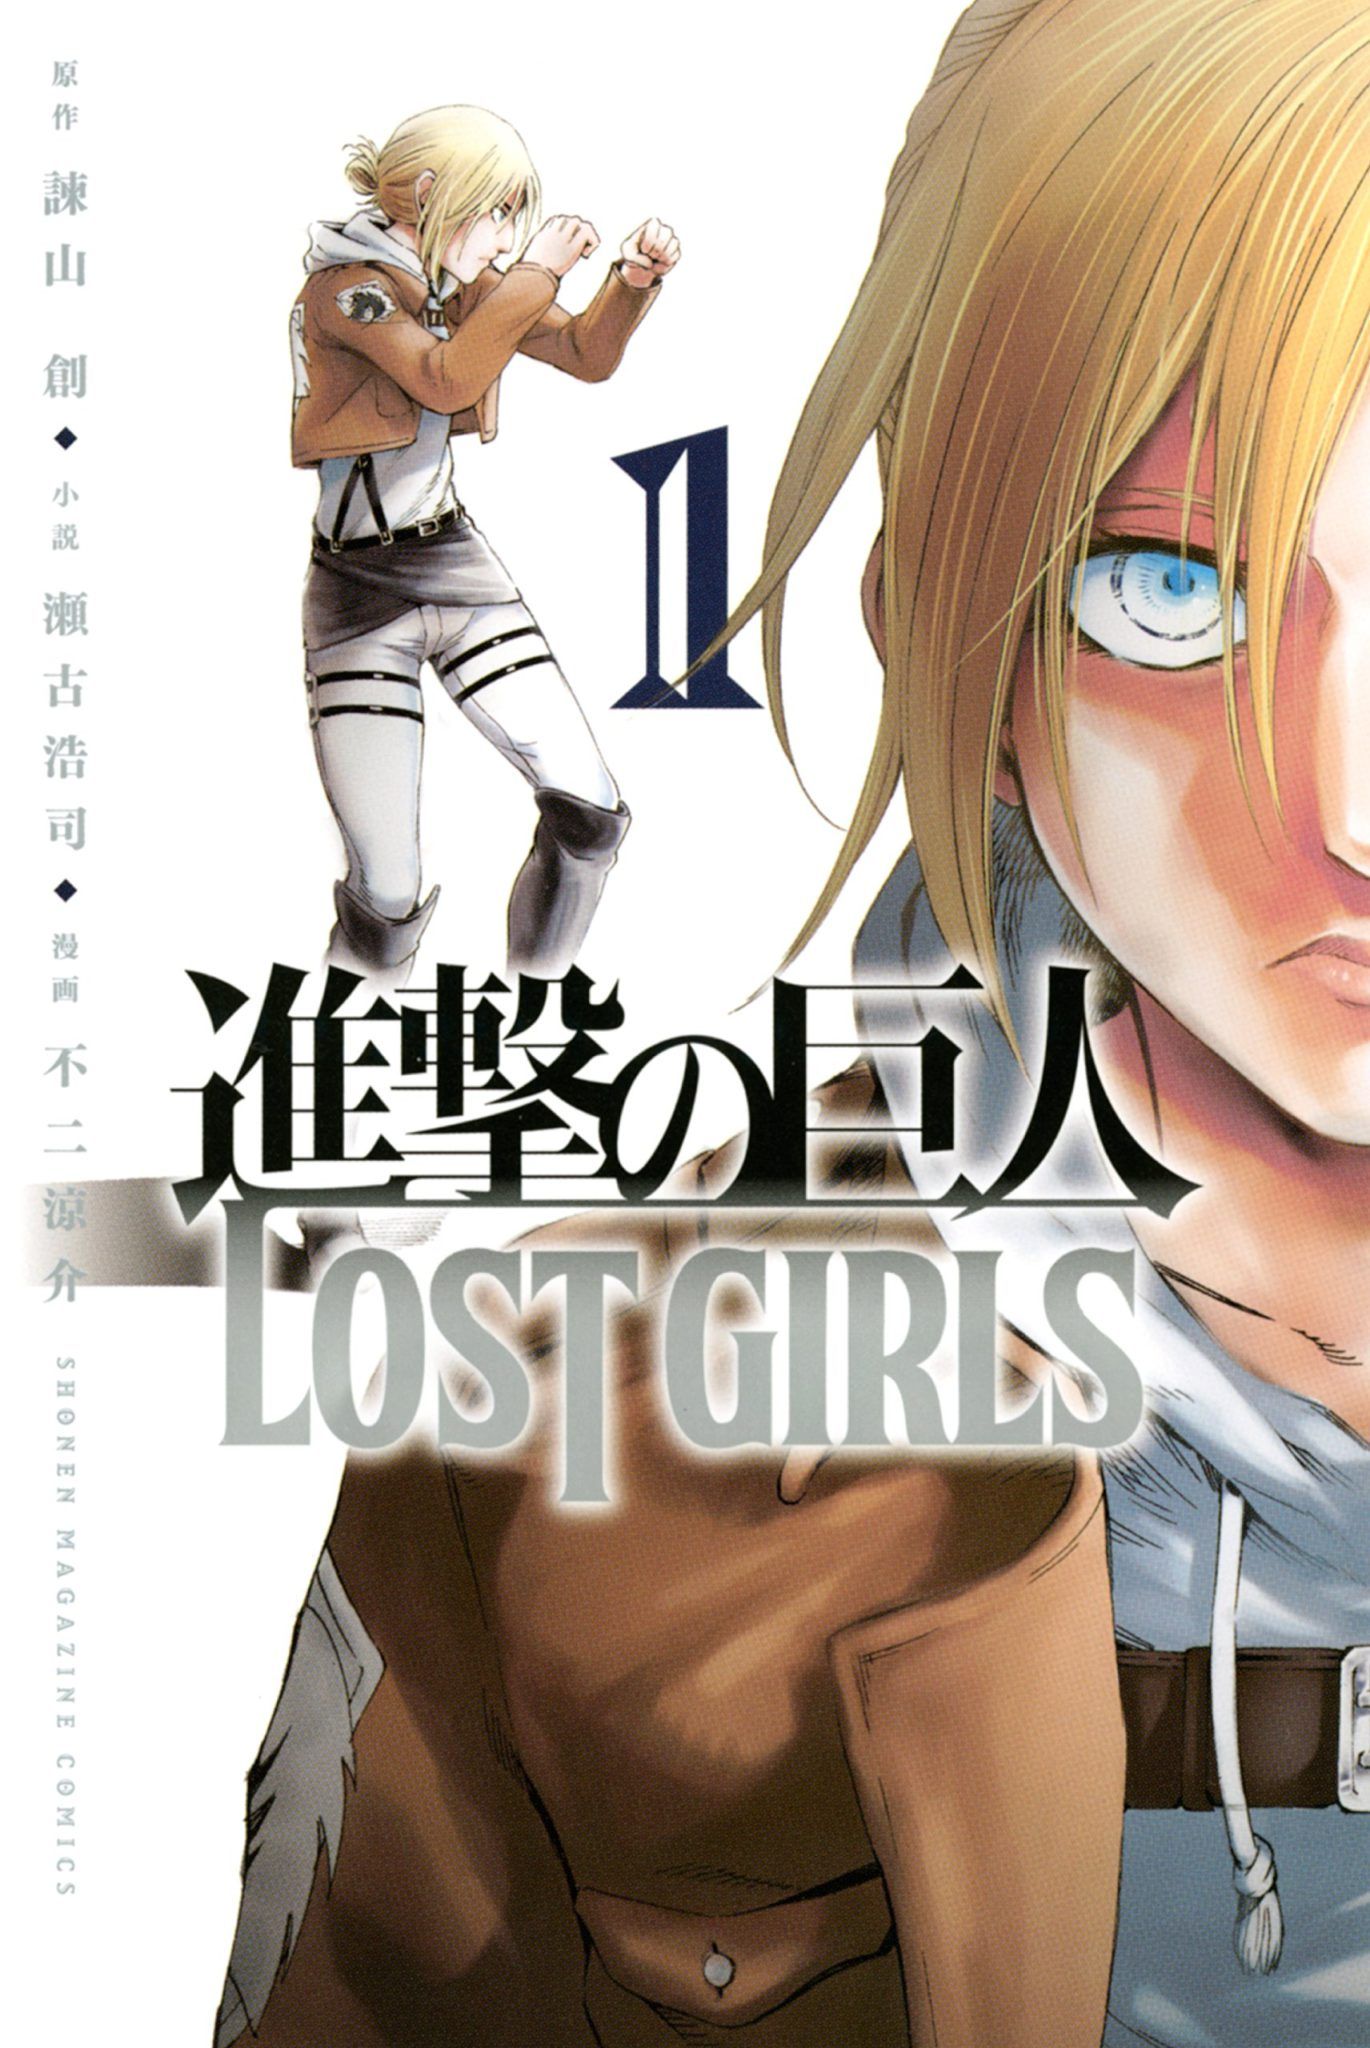 Attack_on_Titan_Lost_Girls_Manga_Vol_1